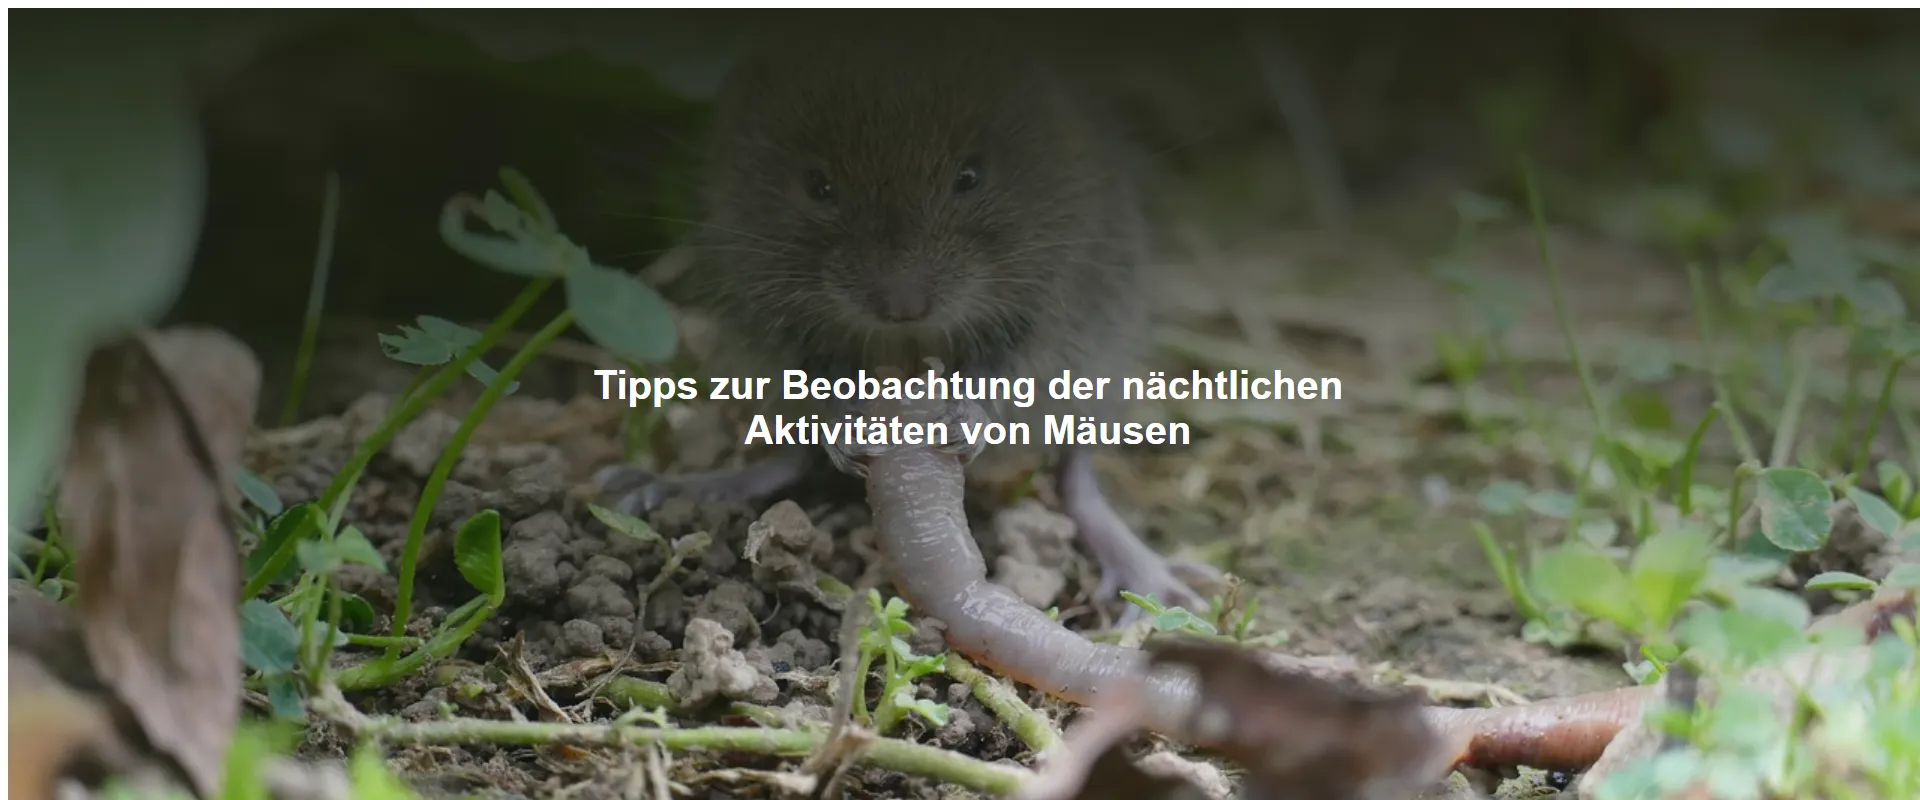 Tipps zur Beobachtung der nächtlichen Aktivitäten von Mäusen